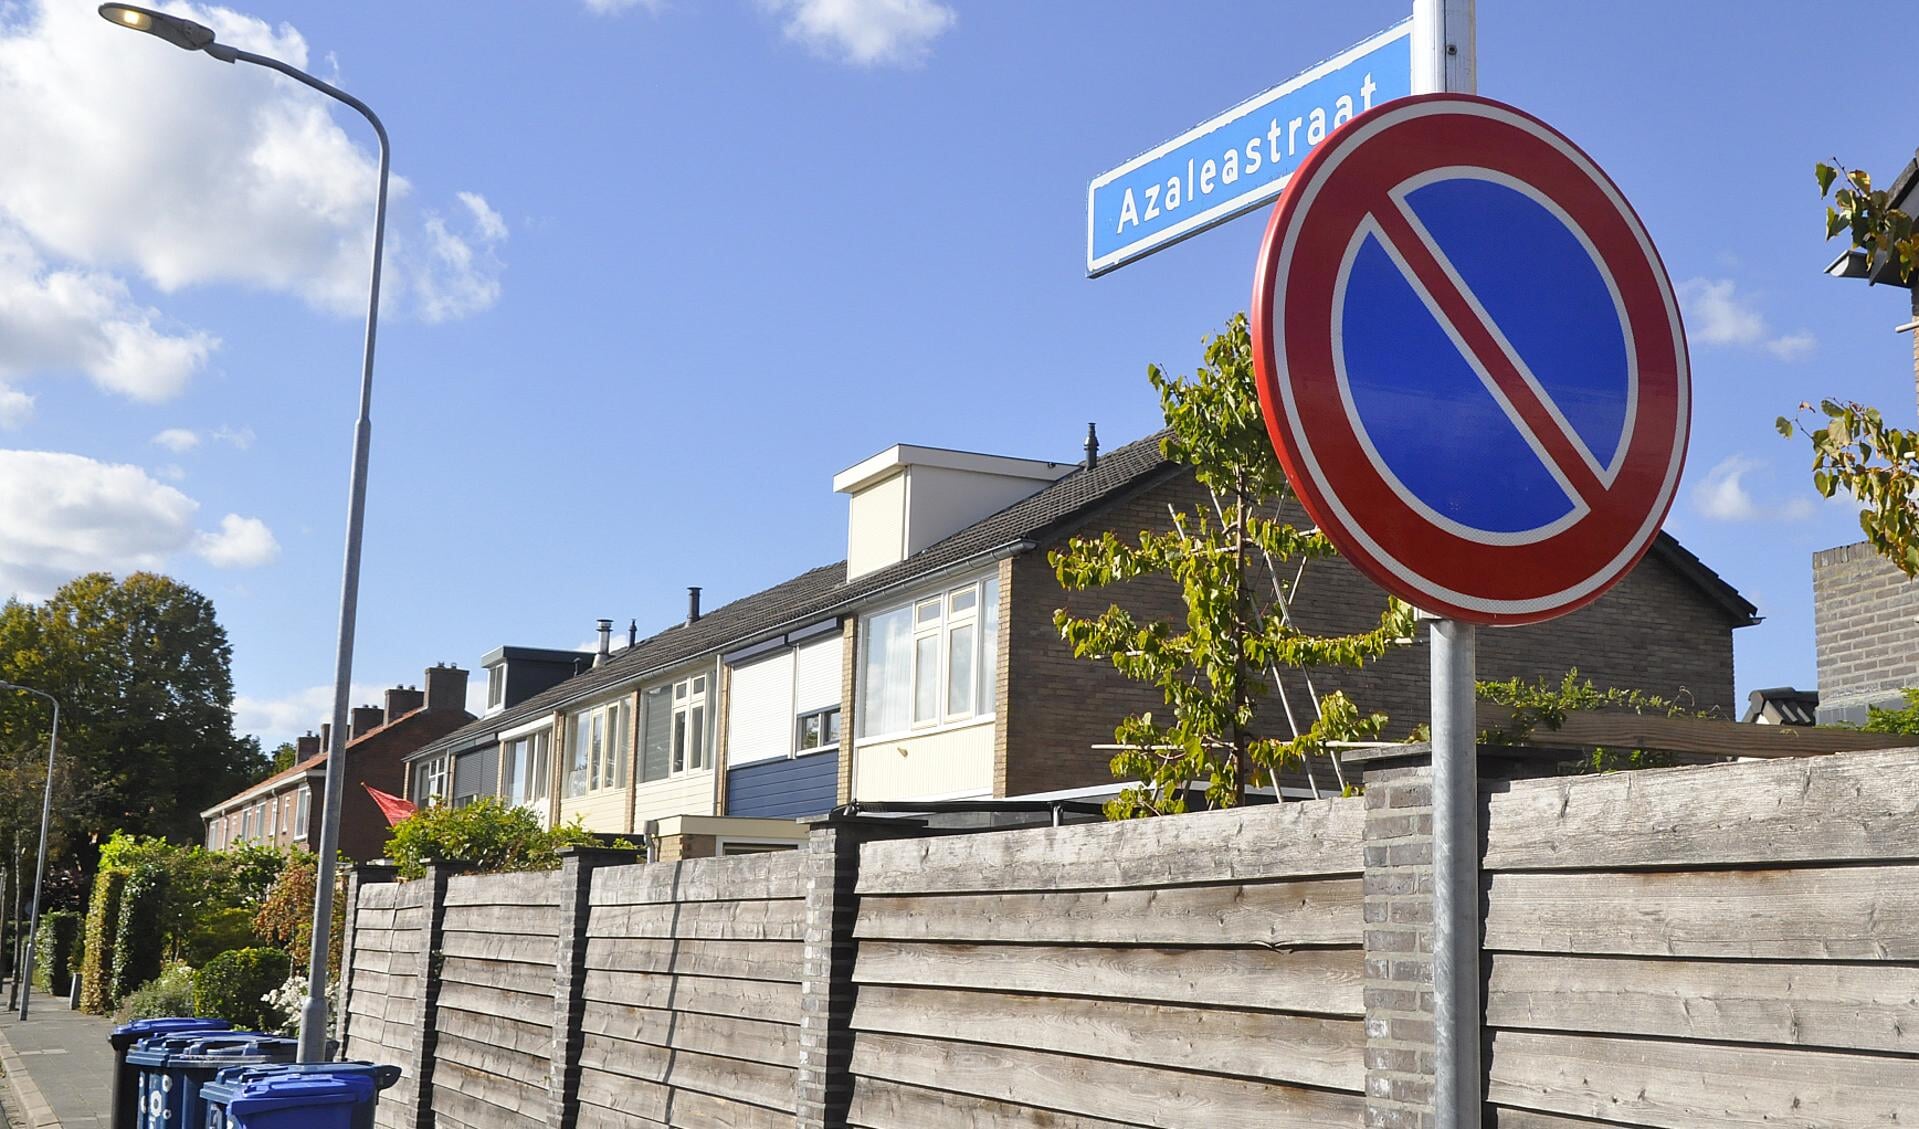 Onder meer aan de Azaleastraat in Barneveld worden huurwoningen volgend jaar verduurzaamd.